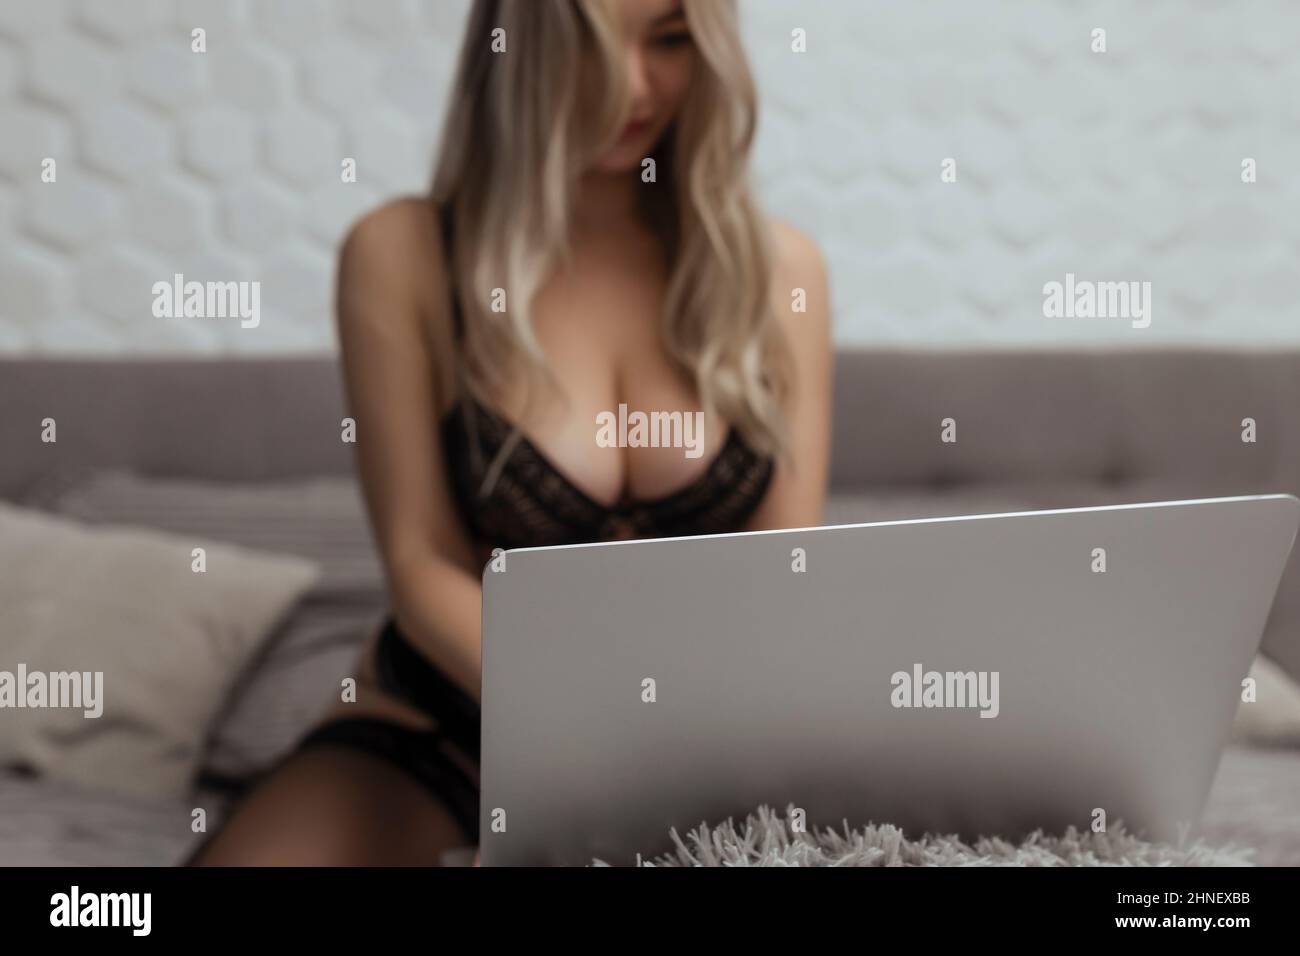 Ein schönes, junges Mädchen schießt eine Webcam, arbeitet als Model. Das Konzept des Online-Flirts, Sex im Internet Stockfoto